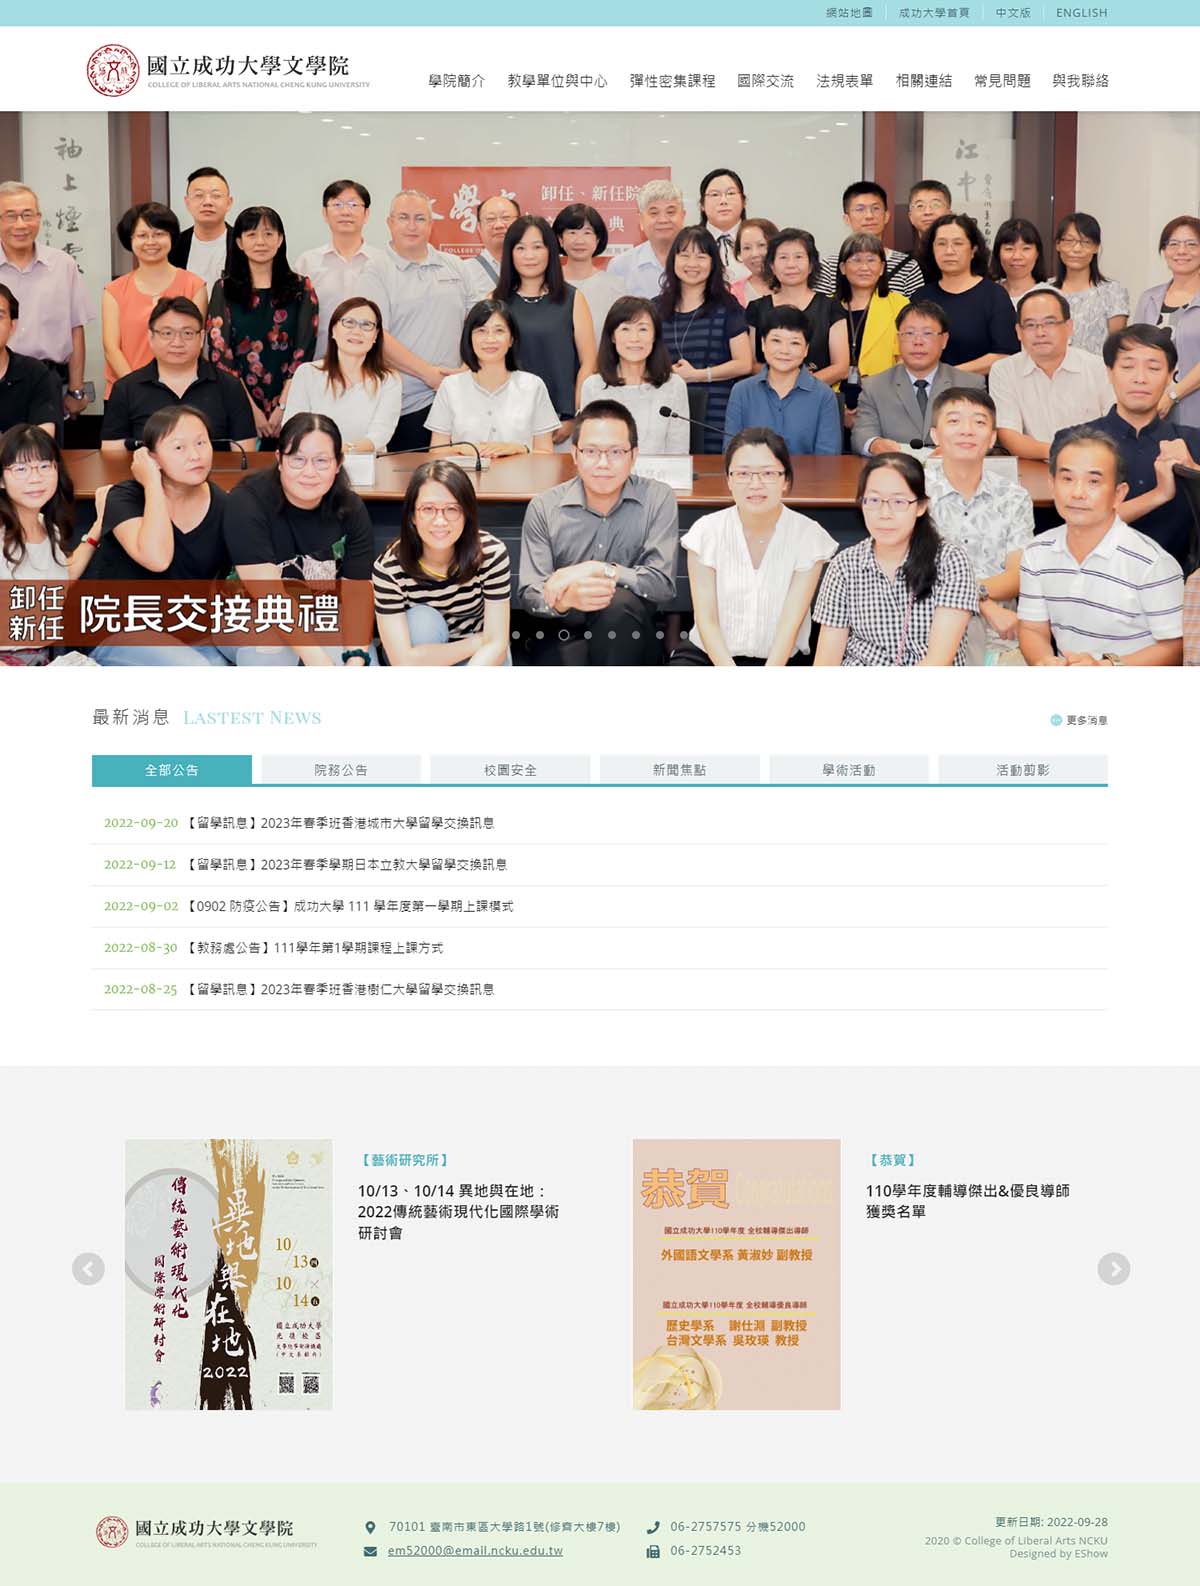 國立中正大學文學院 大學學院RWD響應式網站設計
